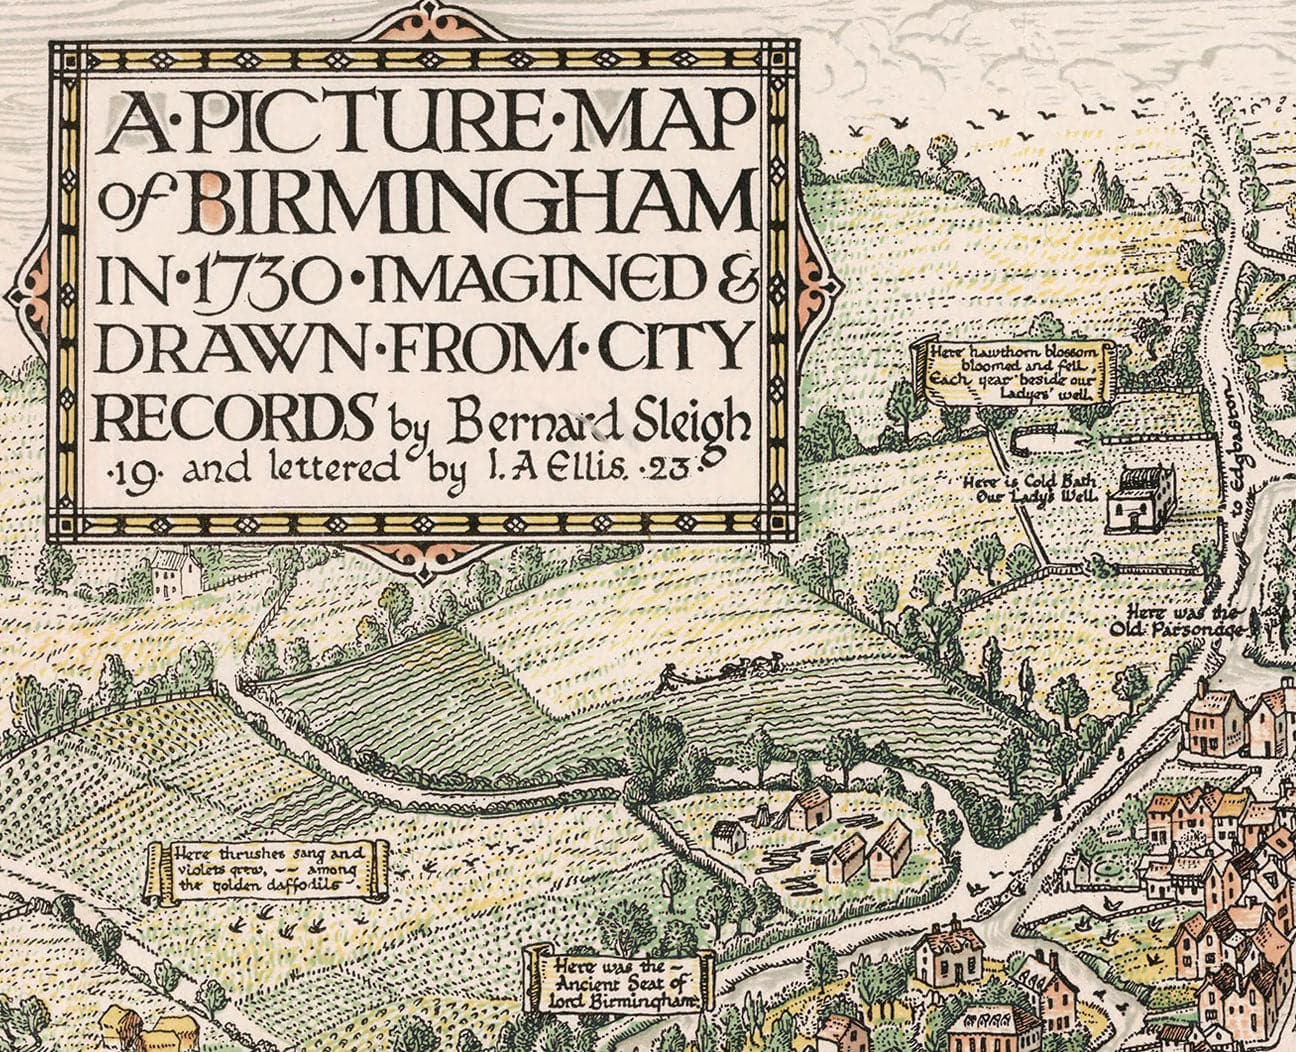 Masque / guêtre de Birmingham avec carte vintage de Birmingham en 1730